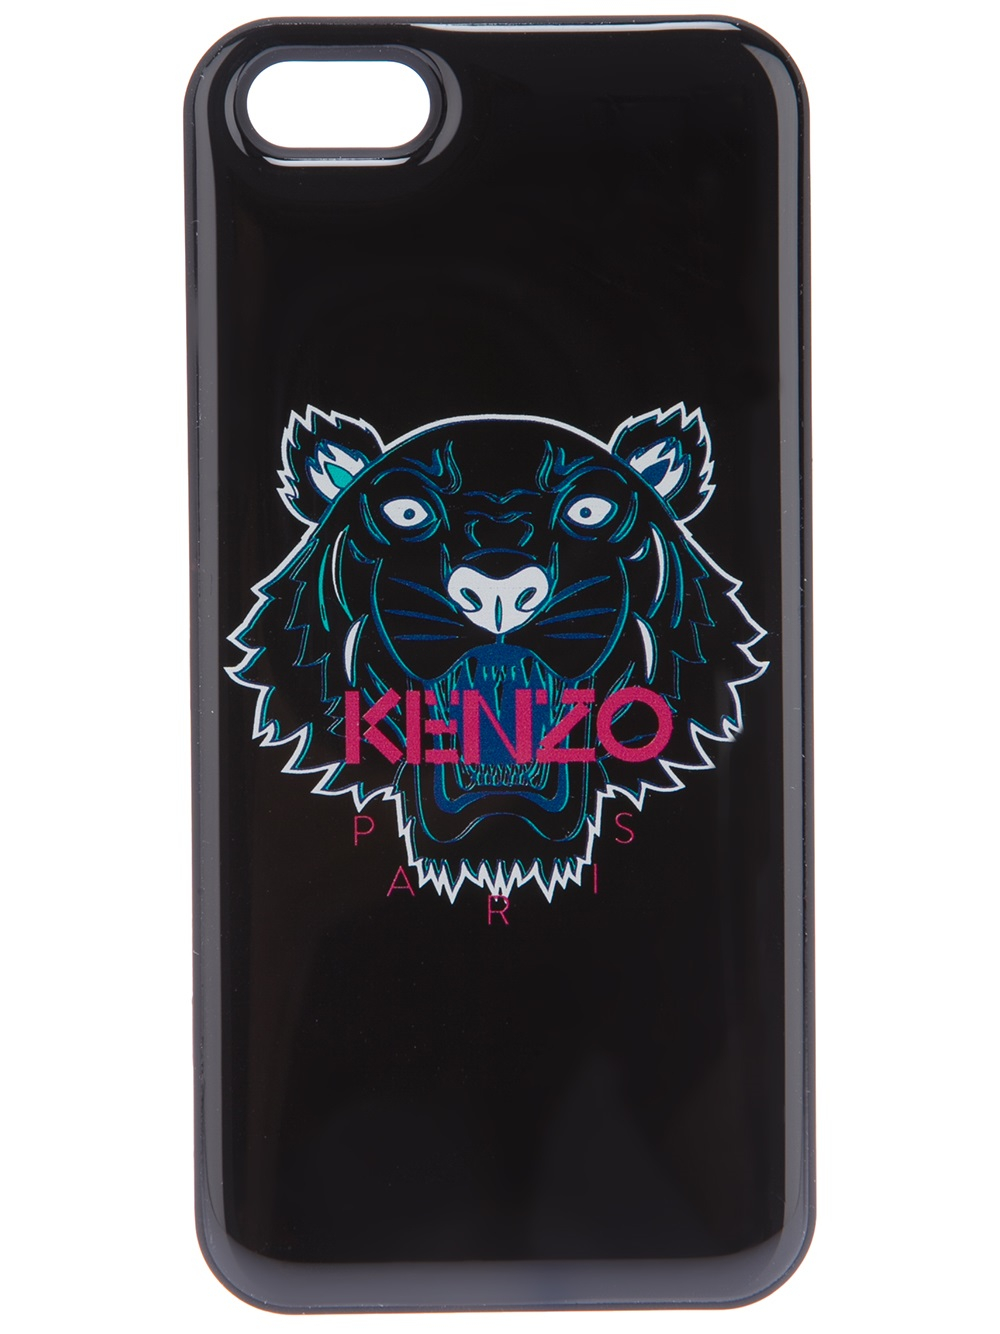 kenzo iphone 6